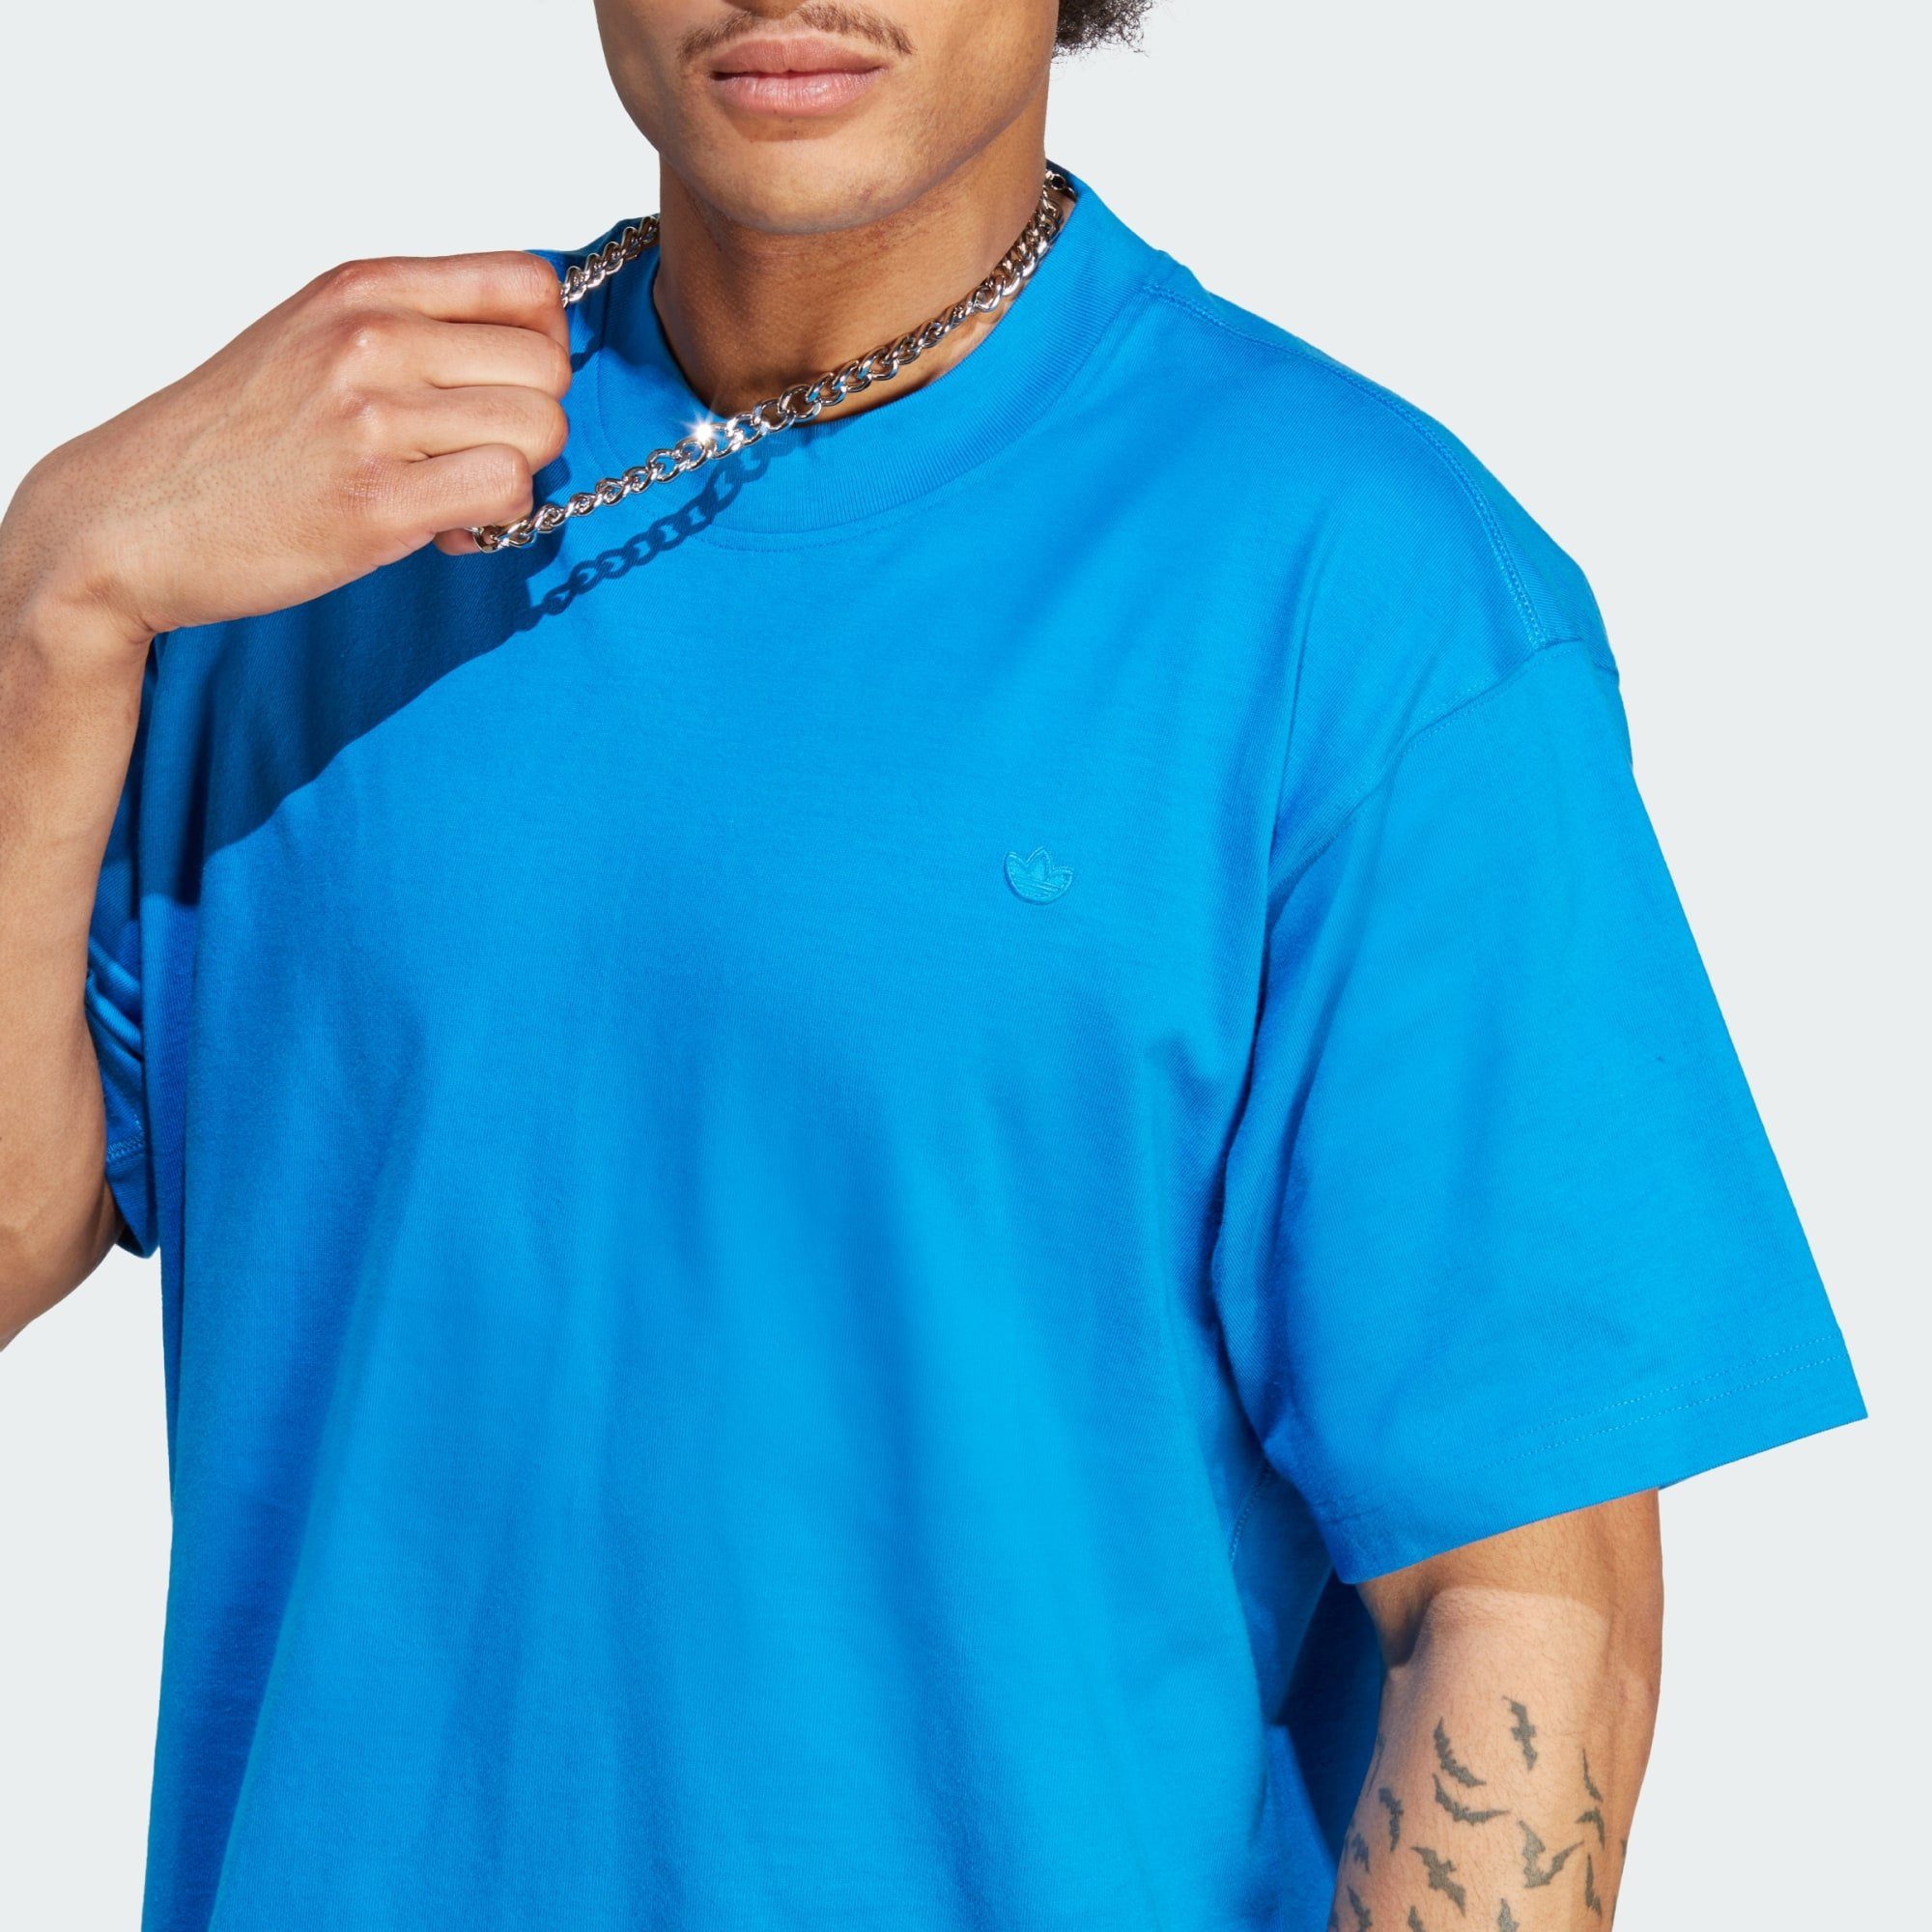 CONTEMPO ADICOLOR T-SHIRT Bird Originals adidas Blue T-Shirt